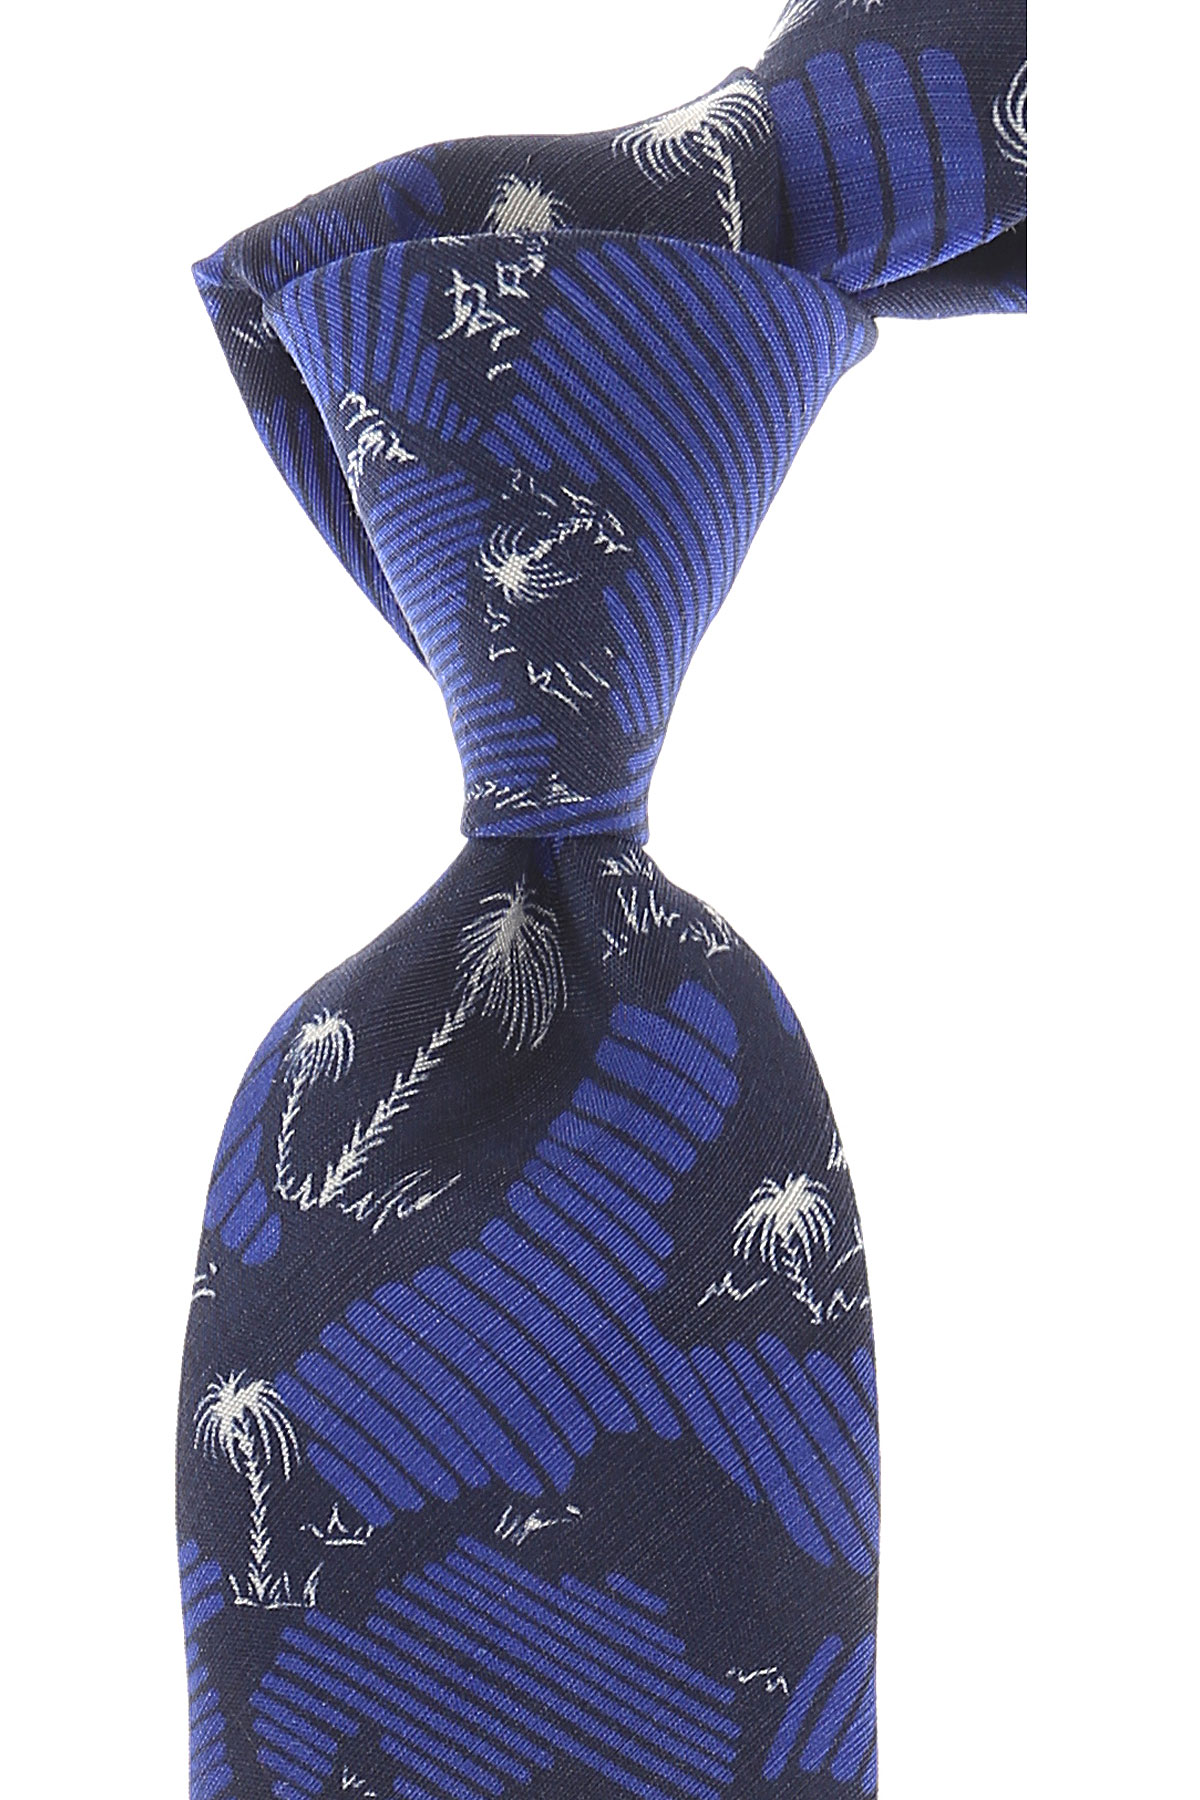 Cravates Kenzo , Bleu électrique, Soie, 2017